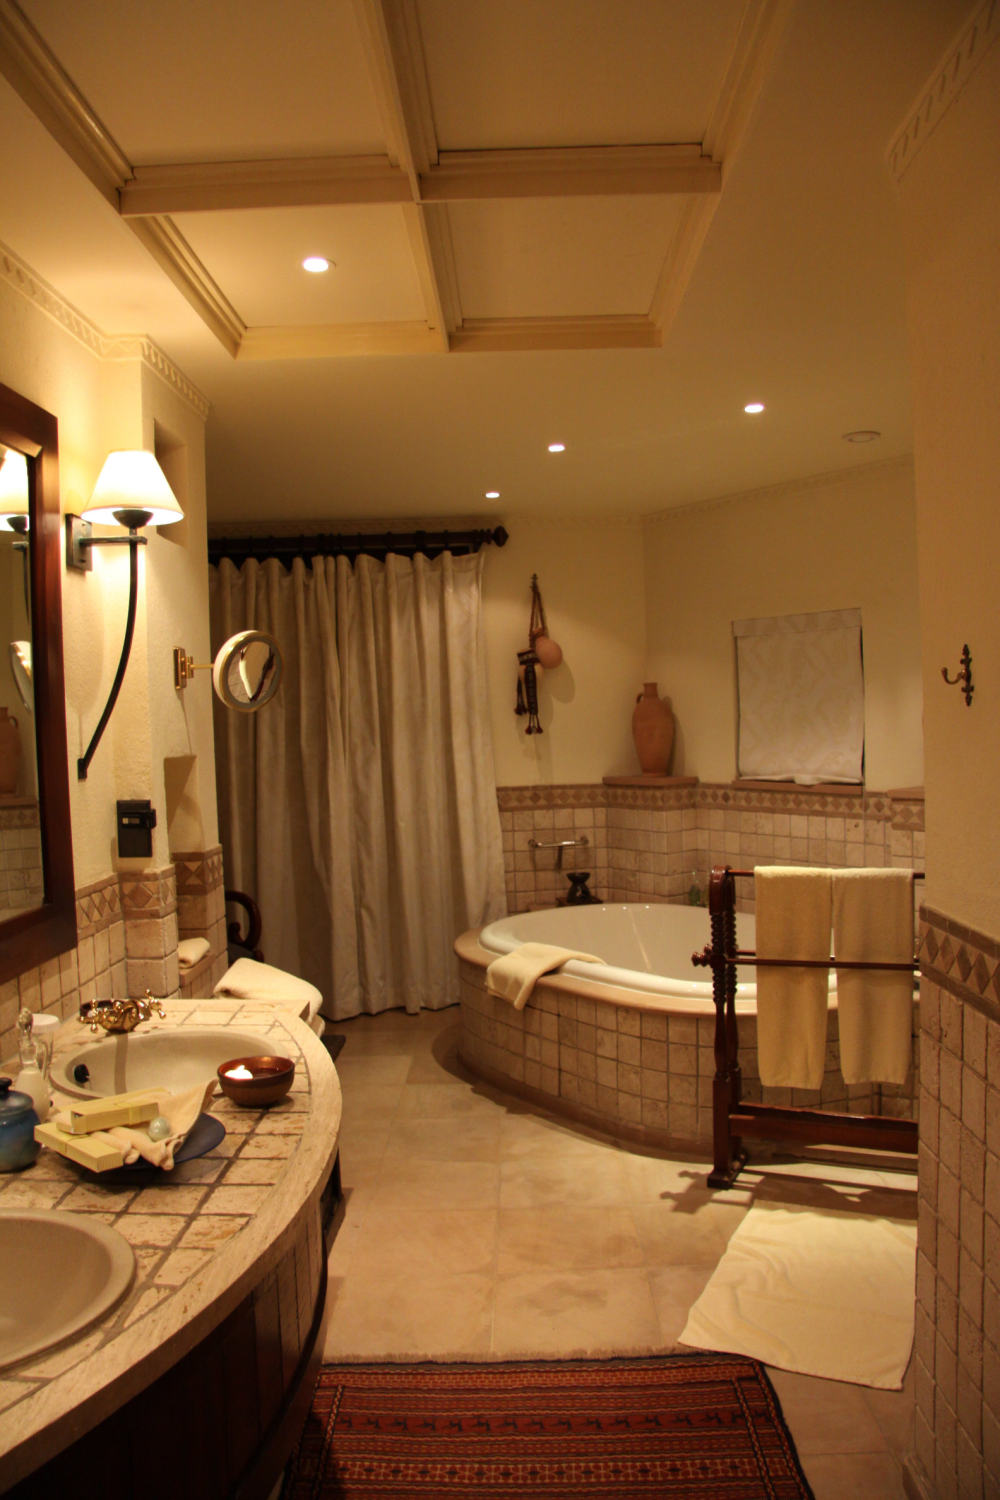 迪拜阿玛哈(AlMaha)沙漠度假酒店Al Maha Desert Resort and Spa, Dubai, United Arab Emirates_IMG_5963.jpg